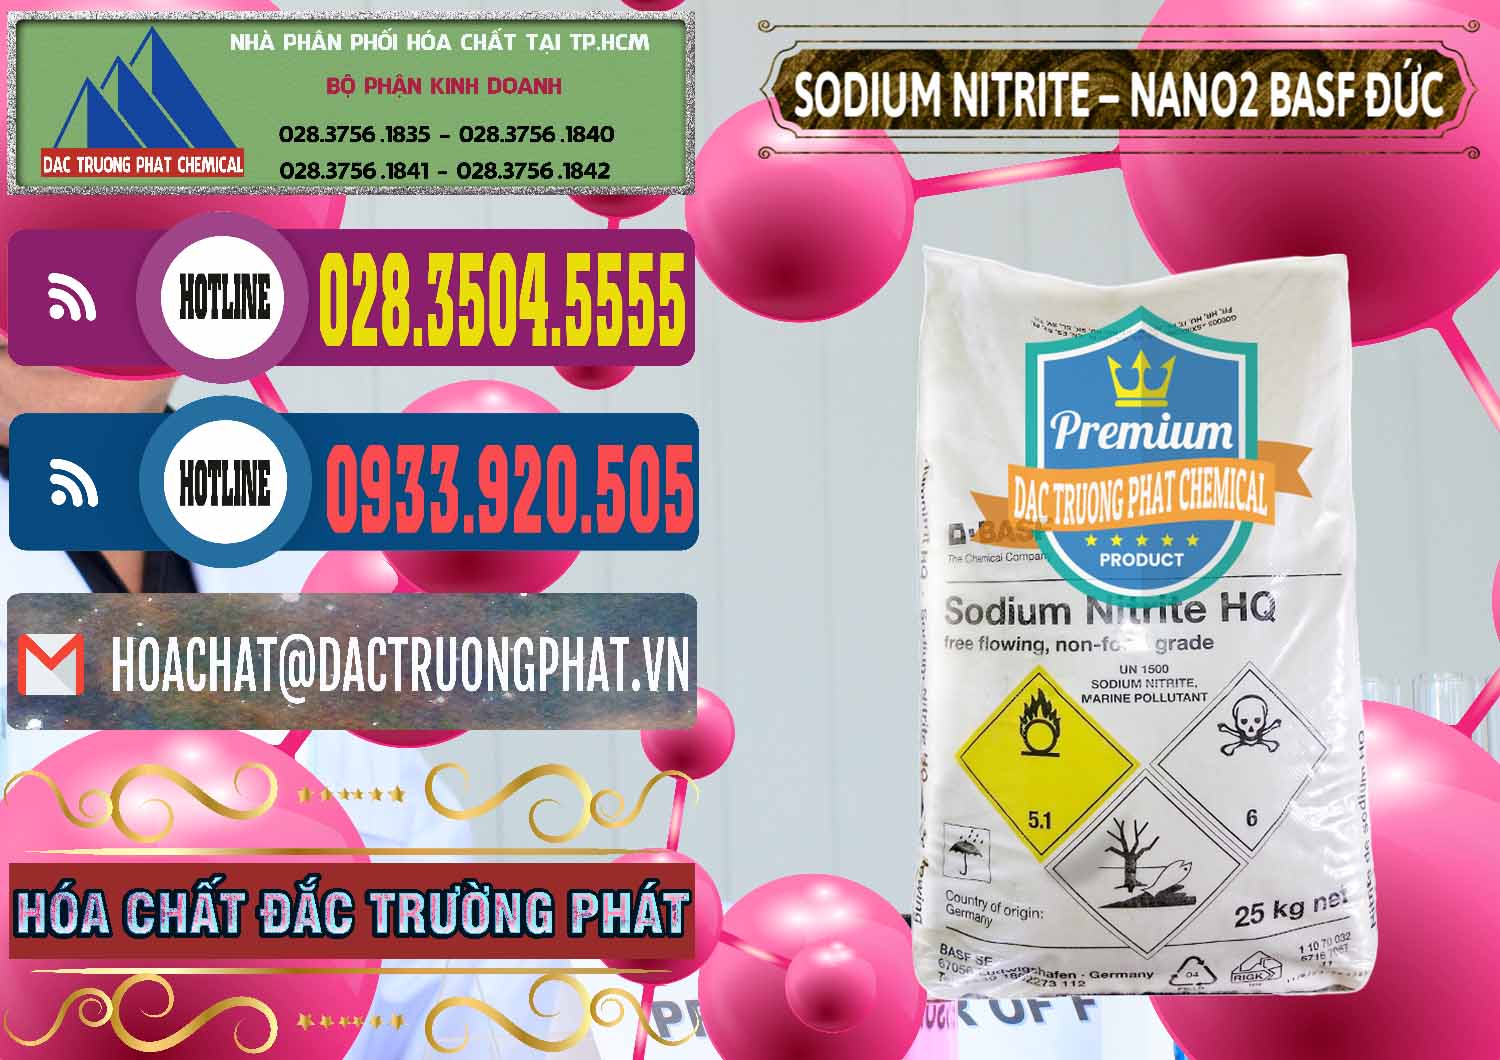 Cty kinh doanh & bán Sodium Nitrite - NANO2 Đức BASF Germany - 0148 - Công ty kinh doanh - cung cấp hóa chất tại TP.HCM - muabanhoachat.com.vn